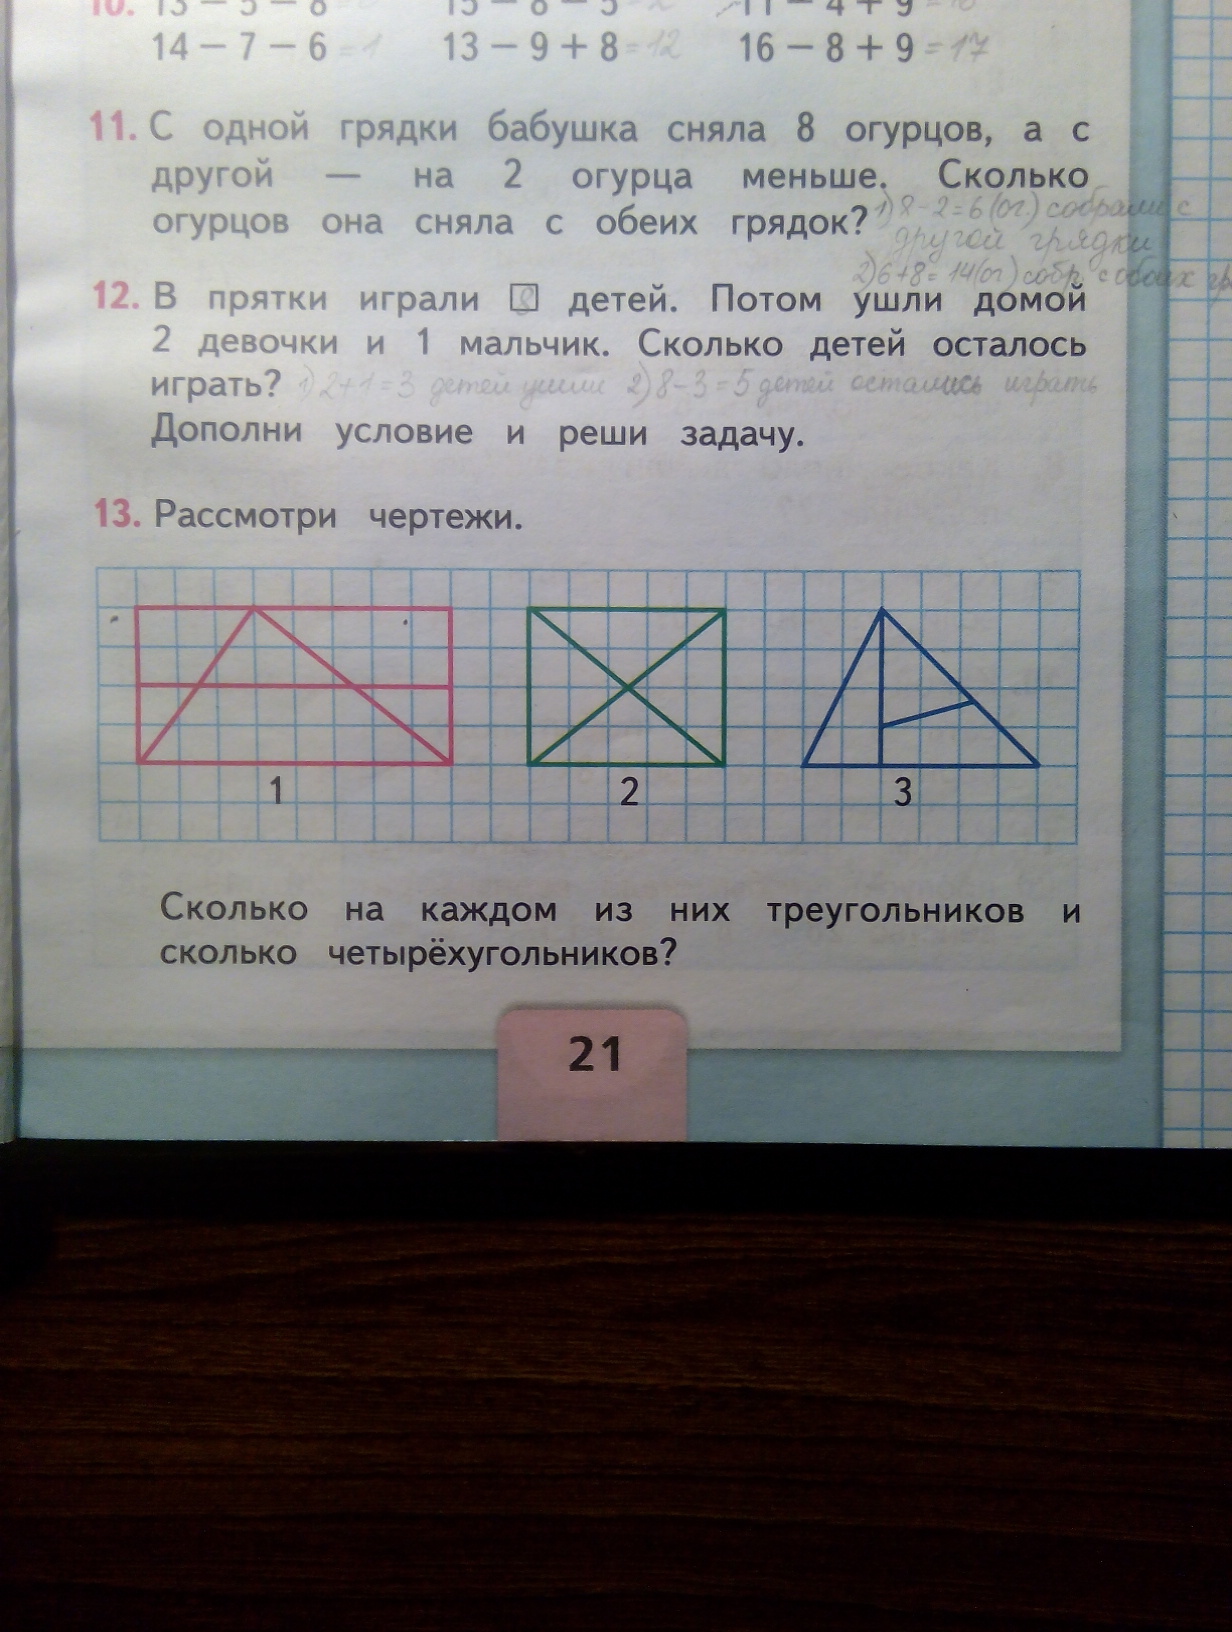 Сколько на чертеже треугольников четырехугольников 2 класс яндекс учебник